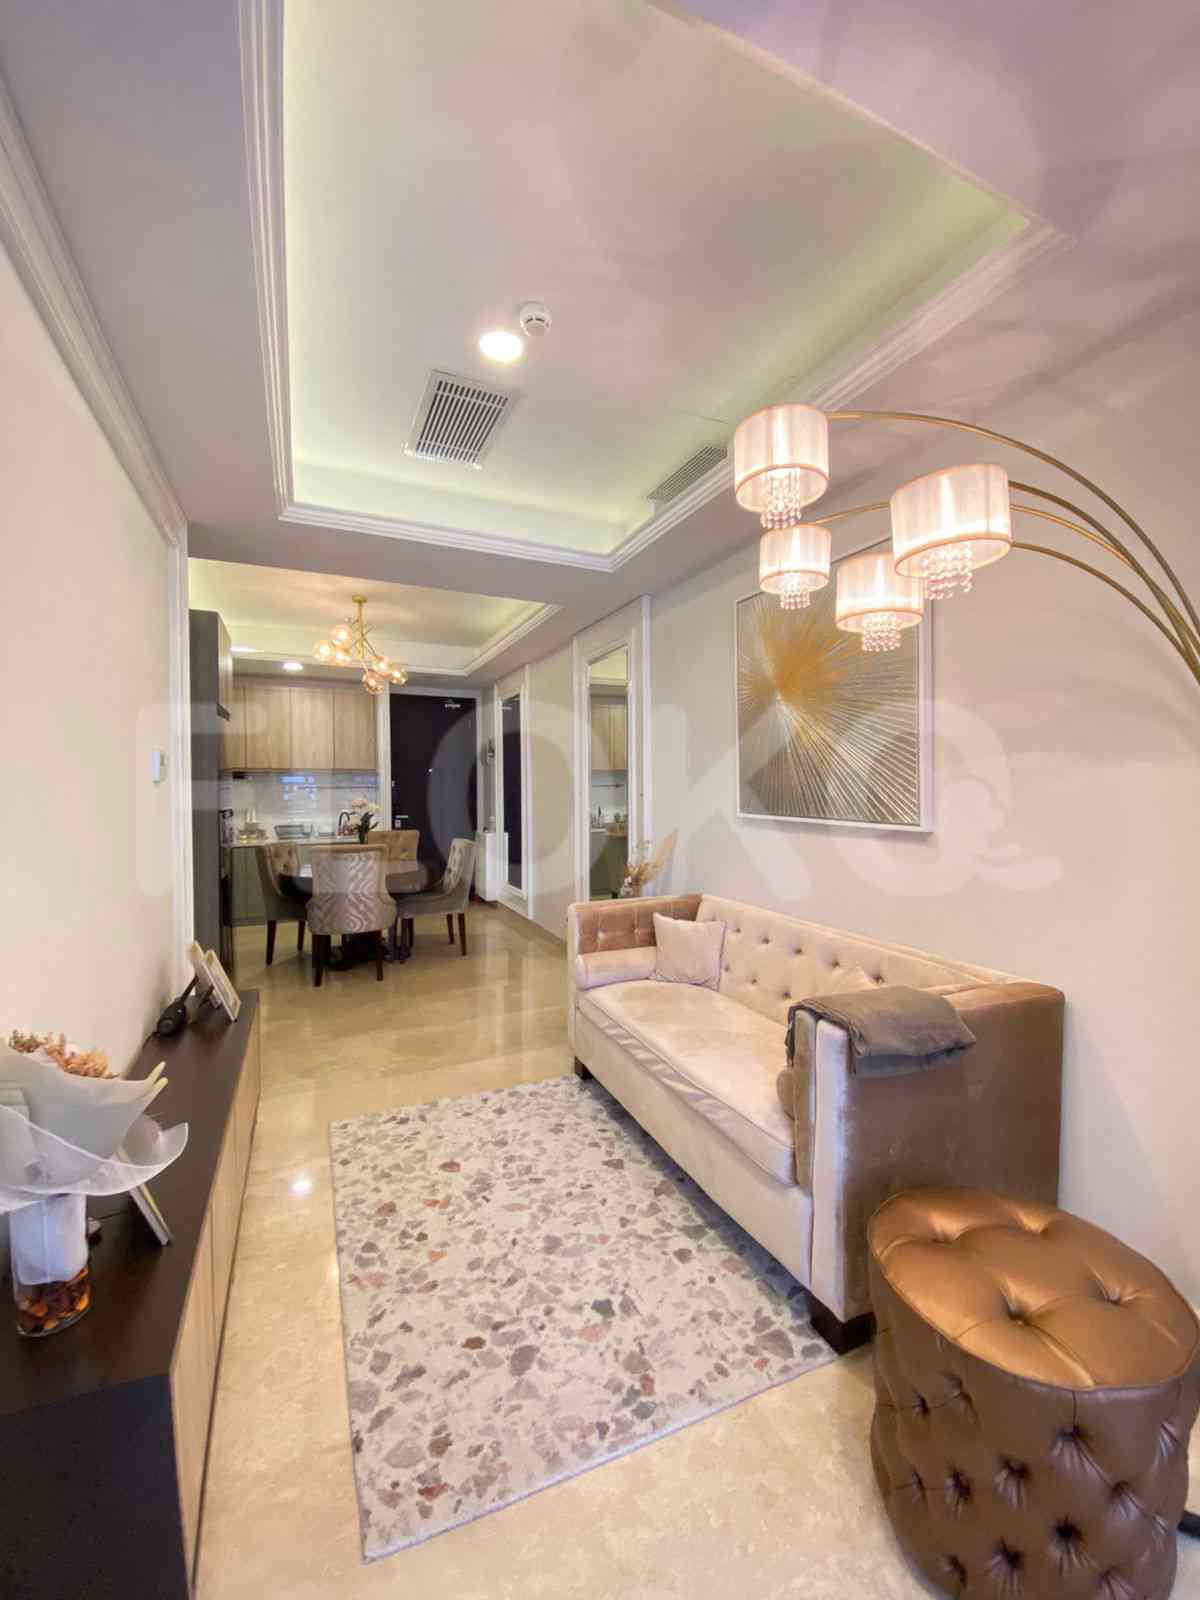 2 Bedroom on 14th Floor for Rent in Sudirman Suites Jakarta - fsu321 2